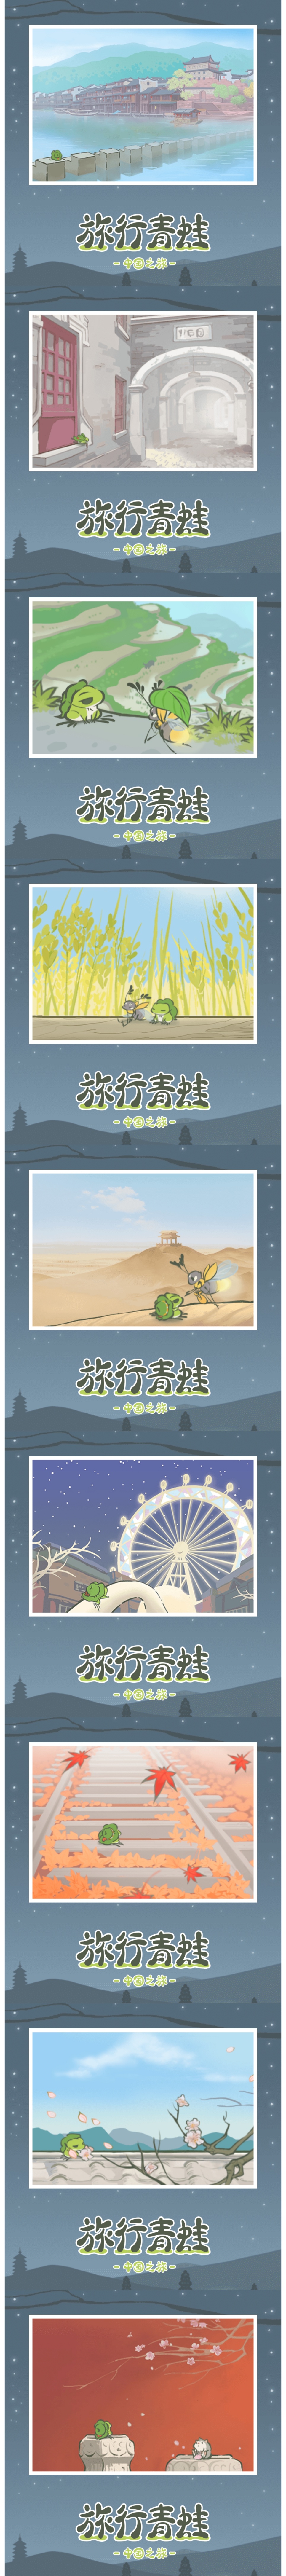 旅行青蛙中国版明信片